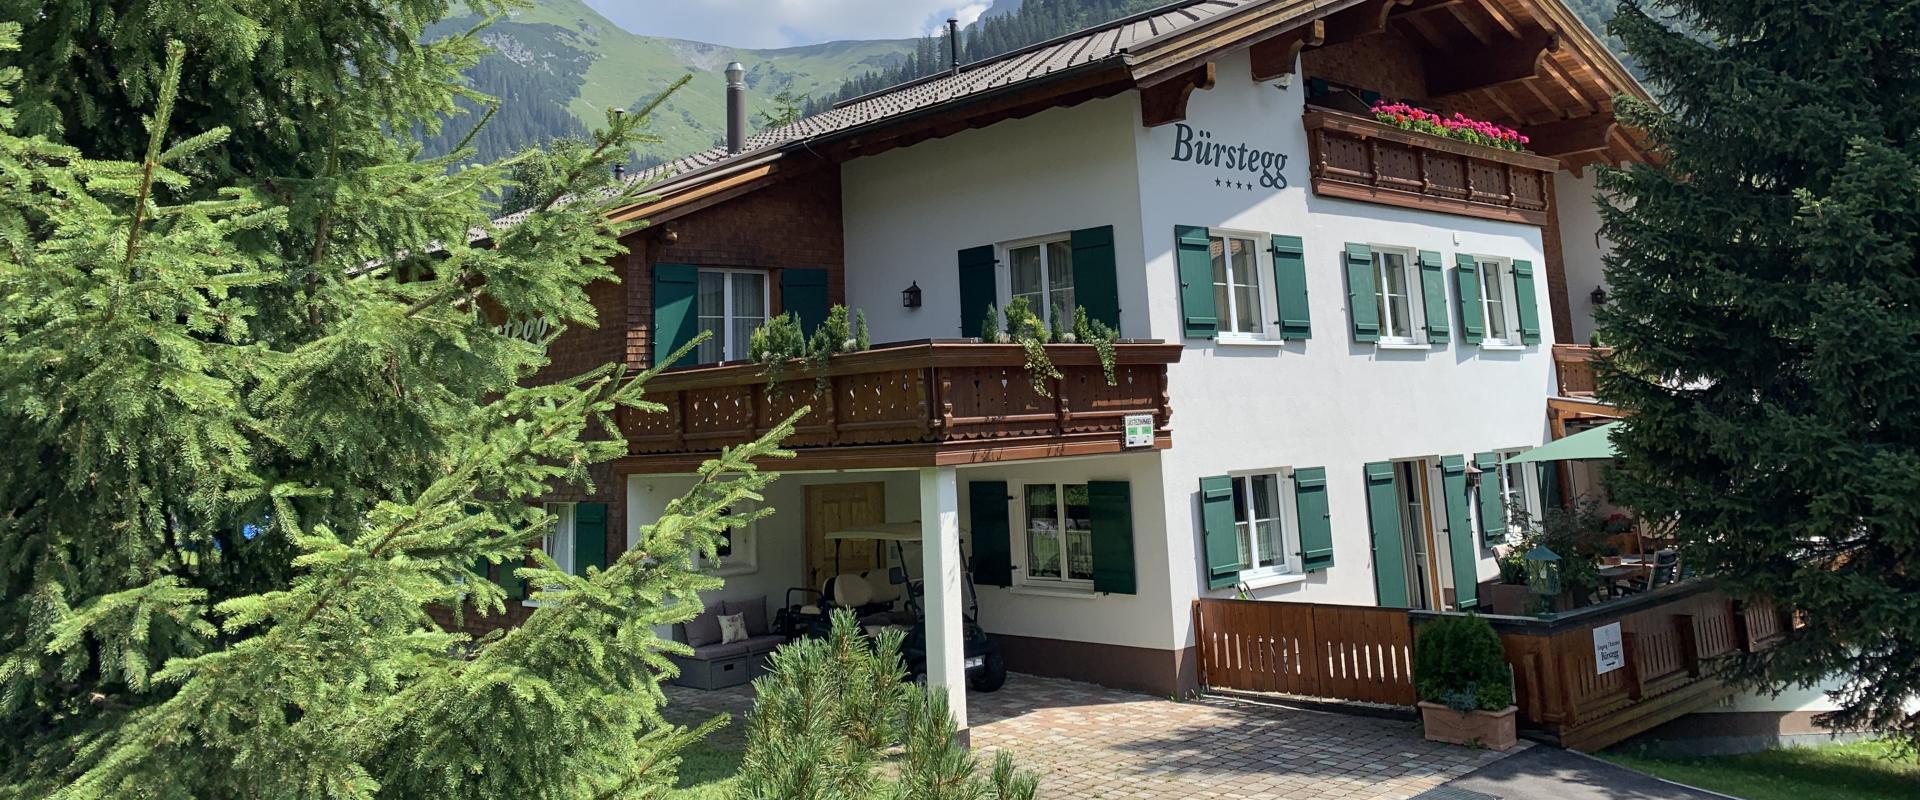 Aussenansicht des Haus Bürstegg im Sommer in Lech am Arlberg